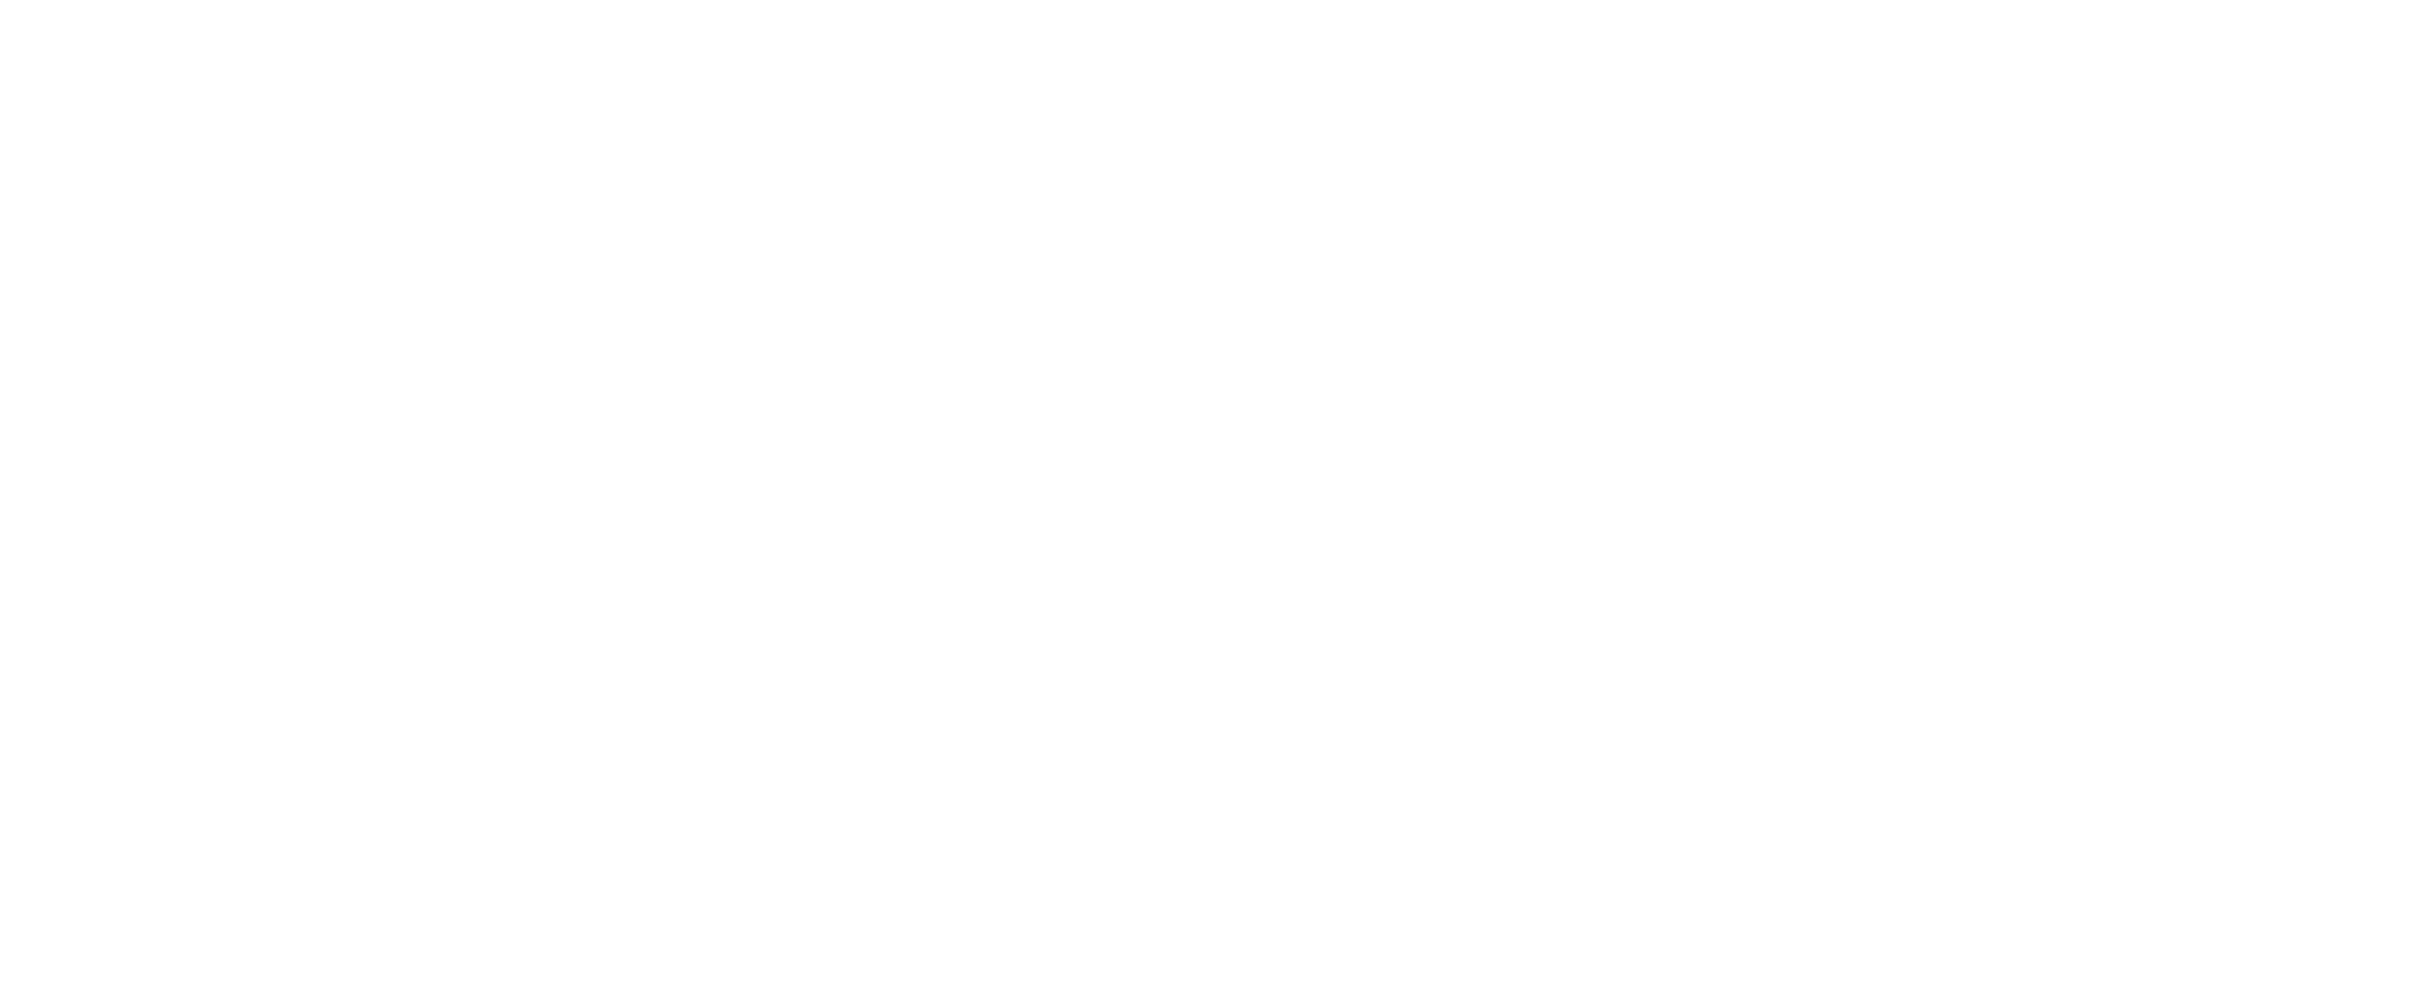 ITMI | International Tour Management Institute